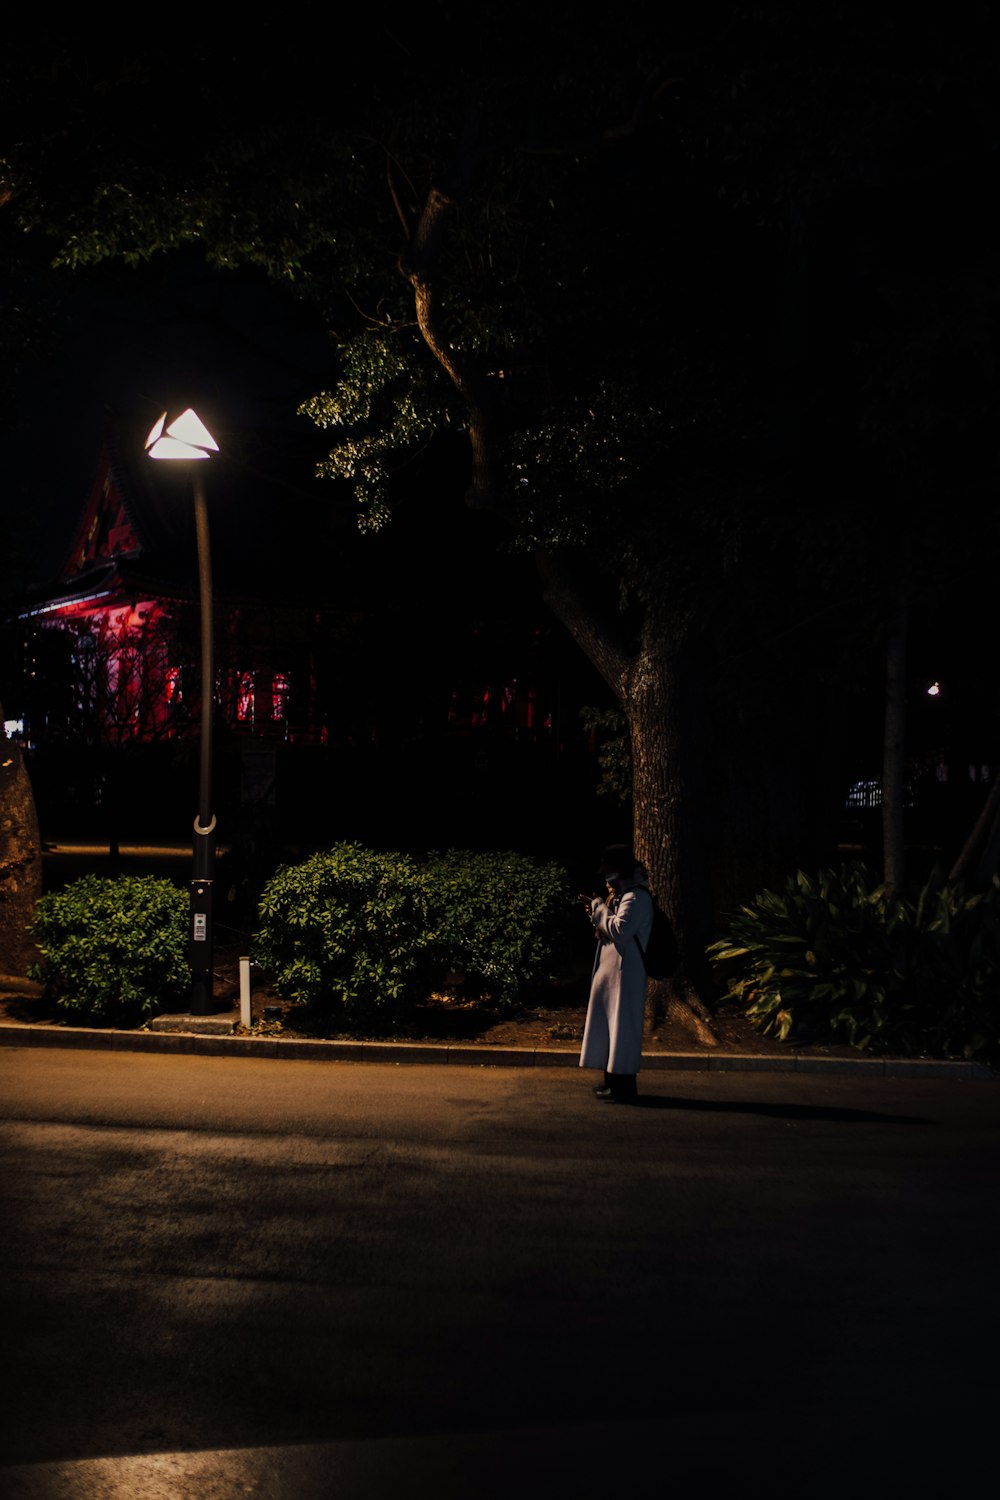 una persona parada en una calle por la noche